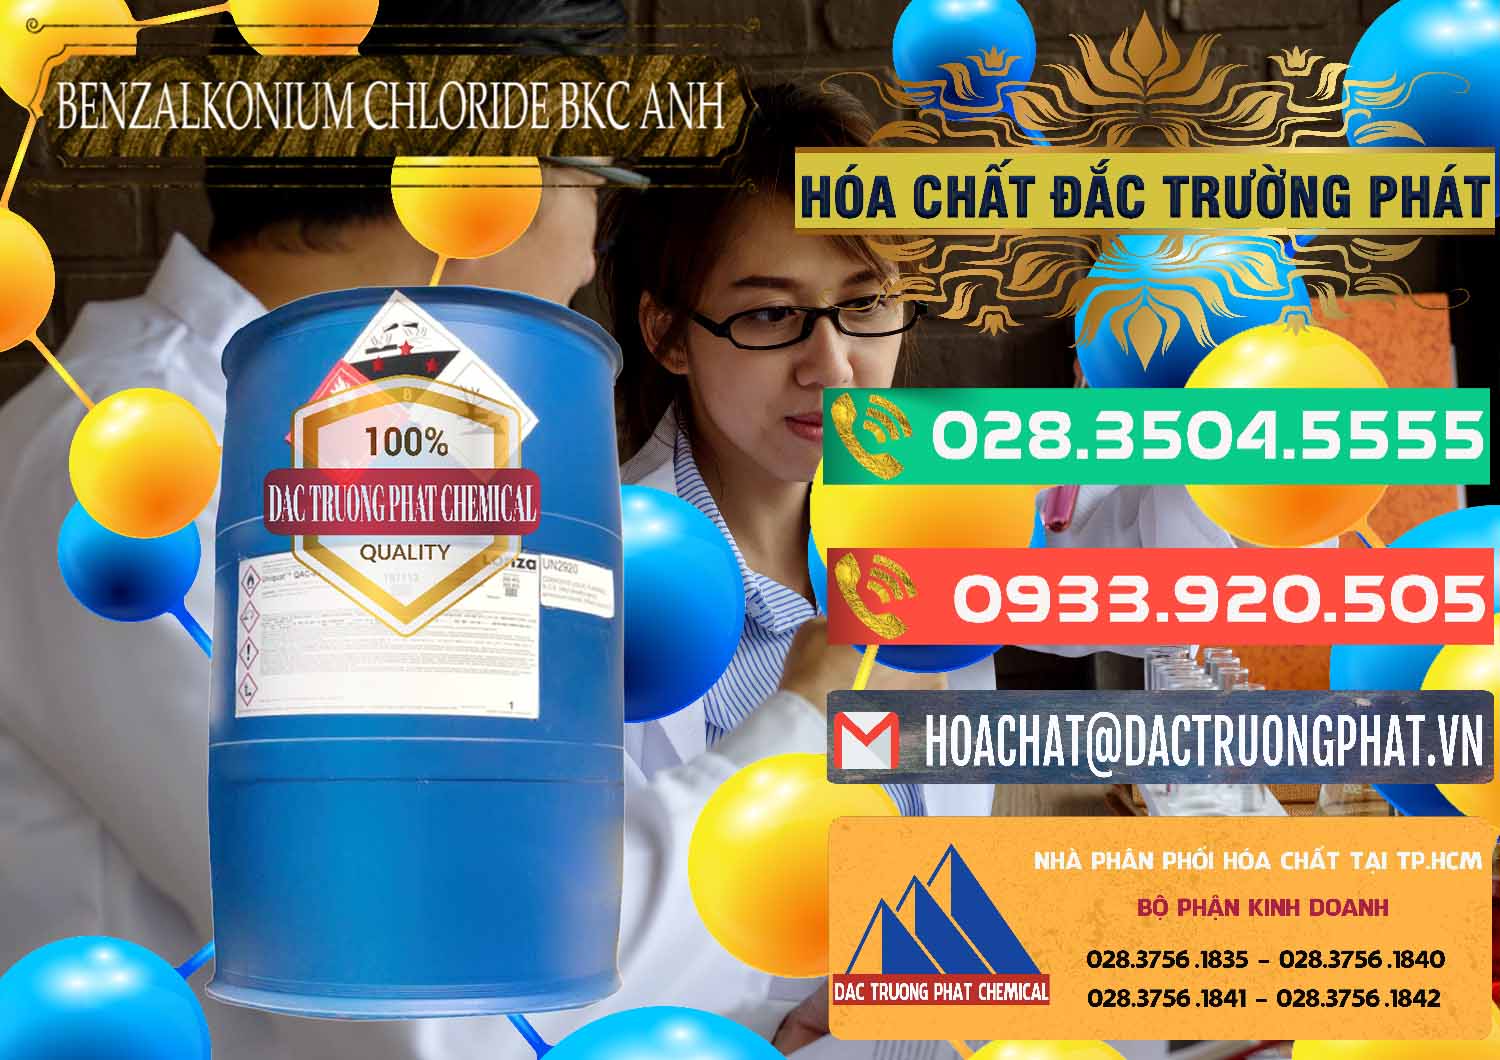 Nơi chuyên bán ( cung ứng ) BKC - Benzalkonium Chloride 80% Anh Quốc Uk Kingdoms - 0457 - Chuyên phân phối - nhập khẩu hóa chất tại TP.HCM - congtyhoachat.com.vn